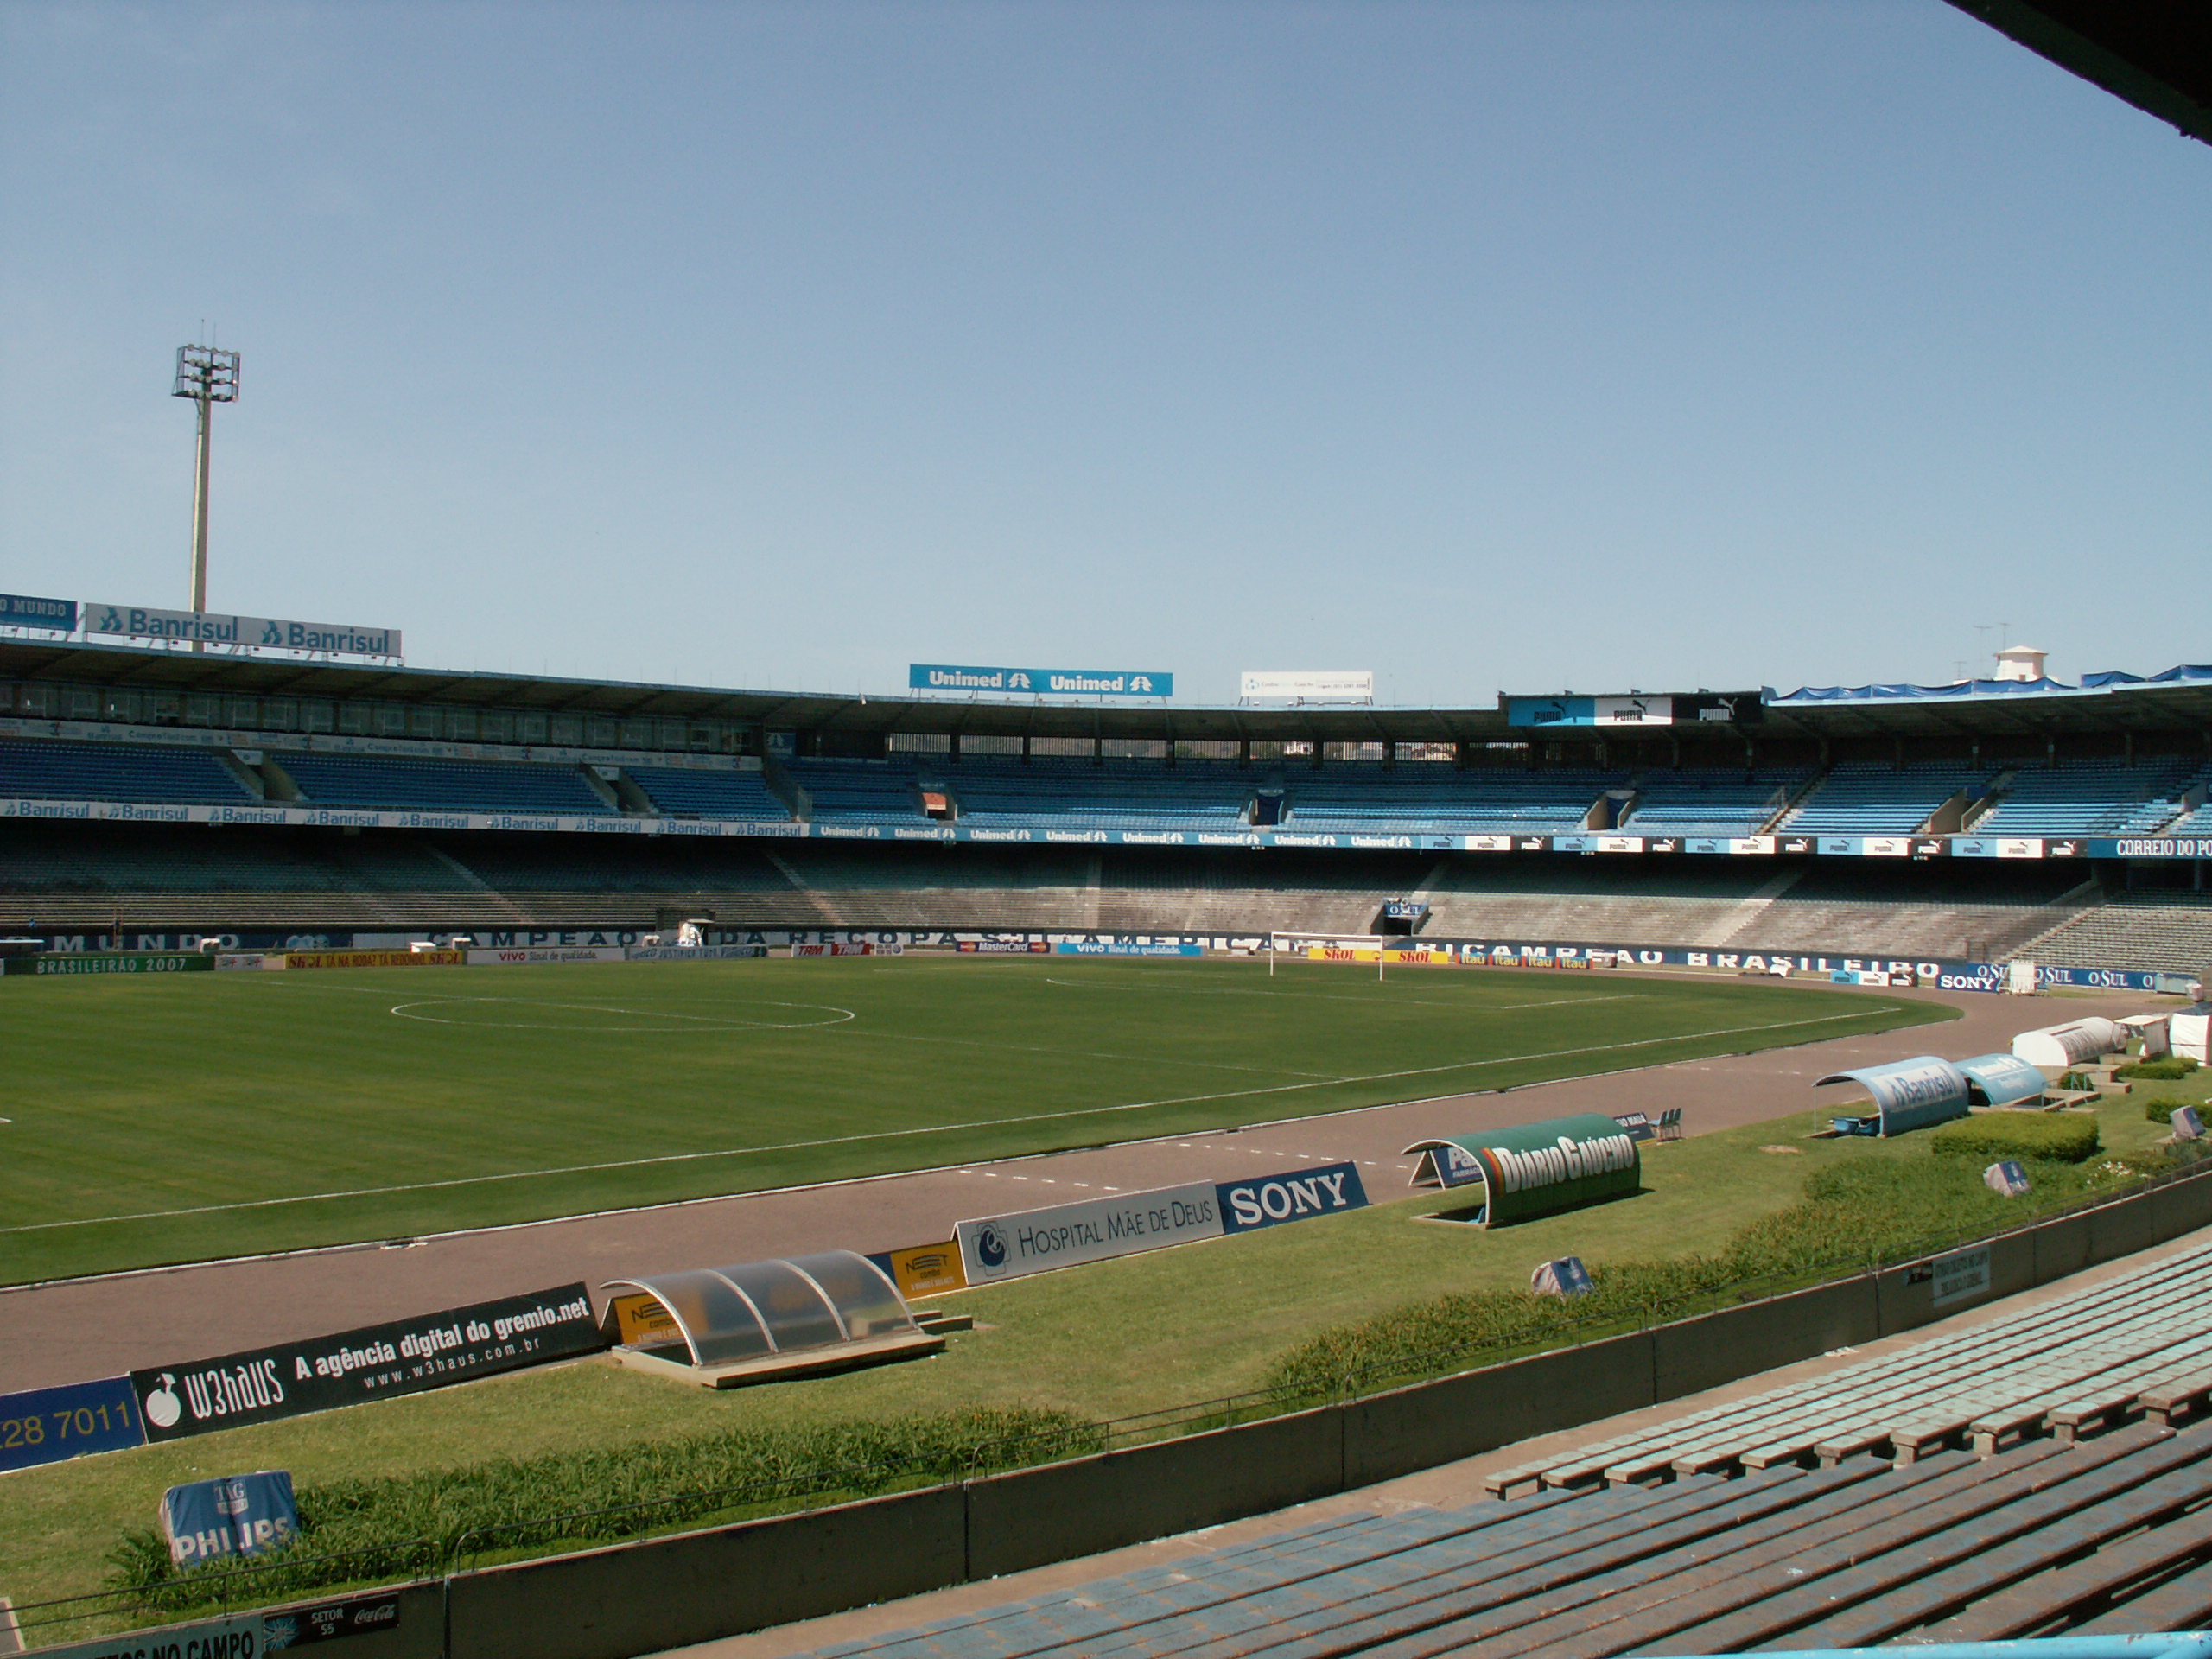 Antes da Arena, o Grêmio mandava seus jogos no Estádio Olímpico Monumental, em Porto Alegre. Sua inauguração aconteceu em setembro de 1954 (66 anos) e está desativado desde a mudança para o outro local.